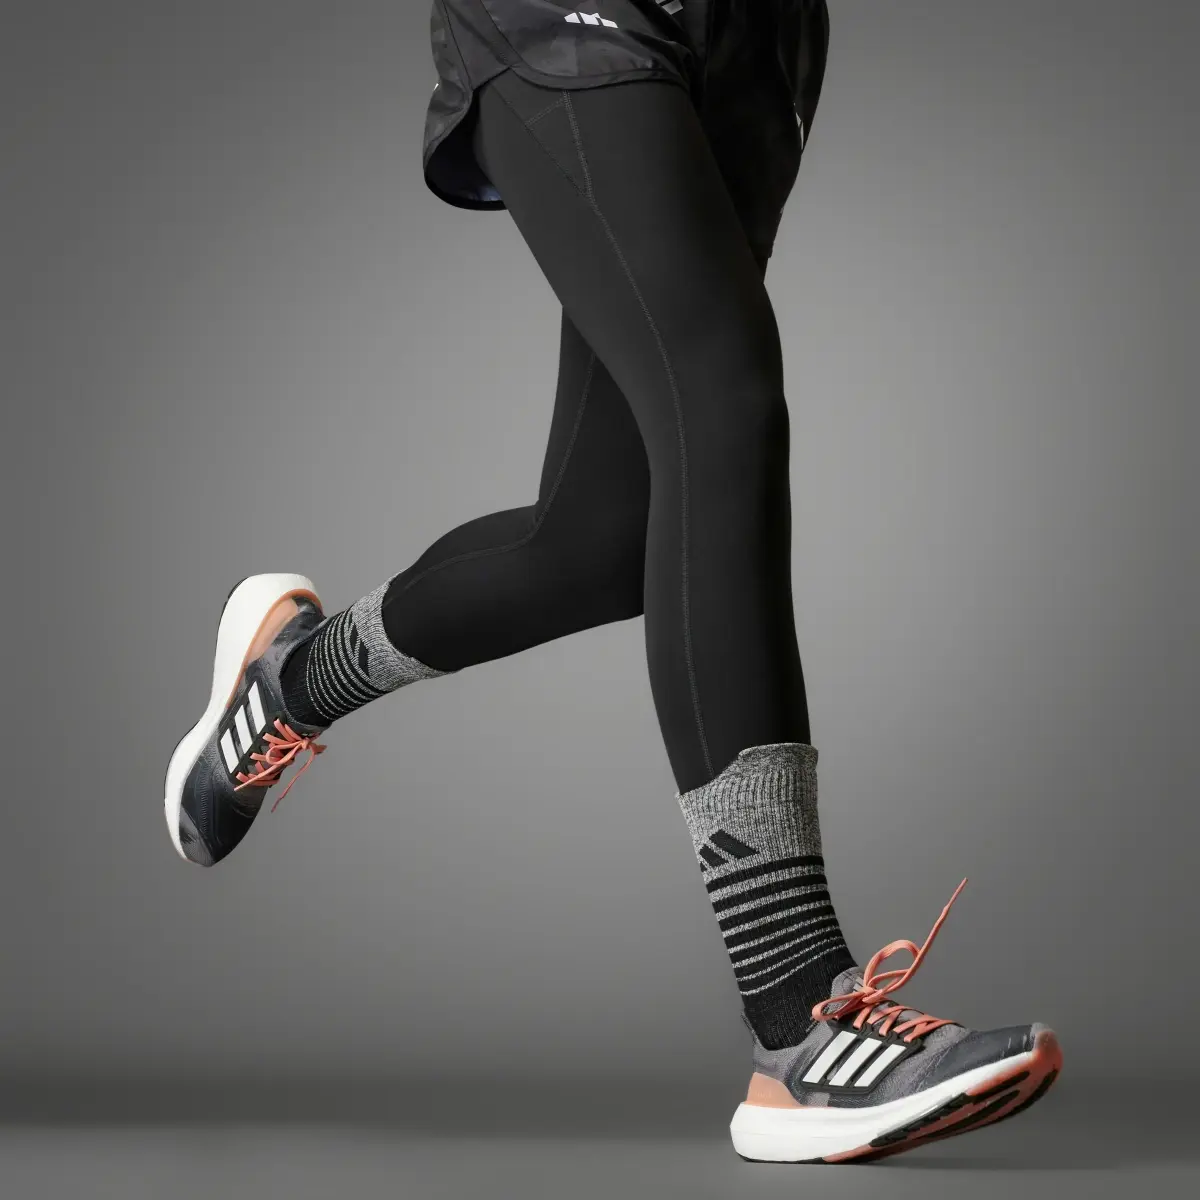 Adidas Ultraboost Light Running Shoes. 2